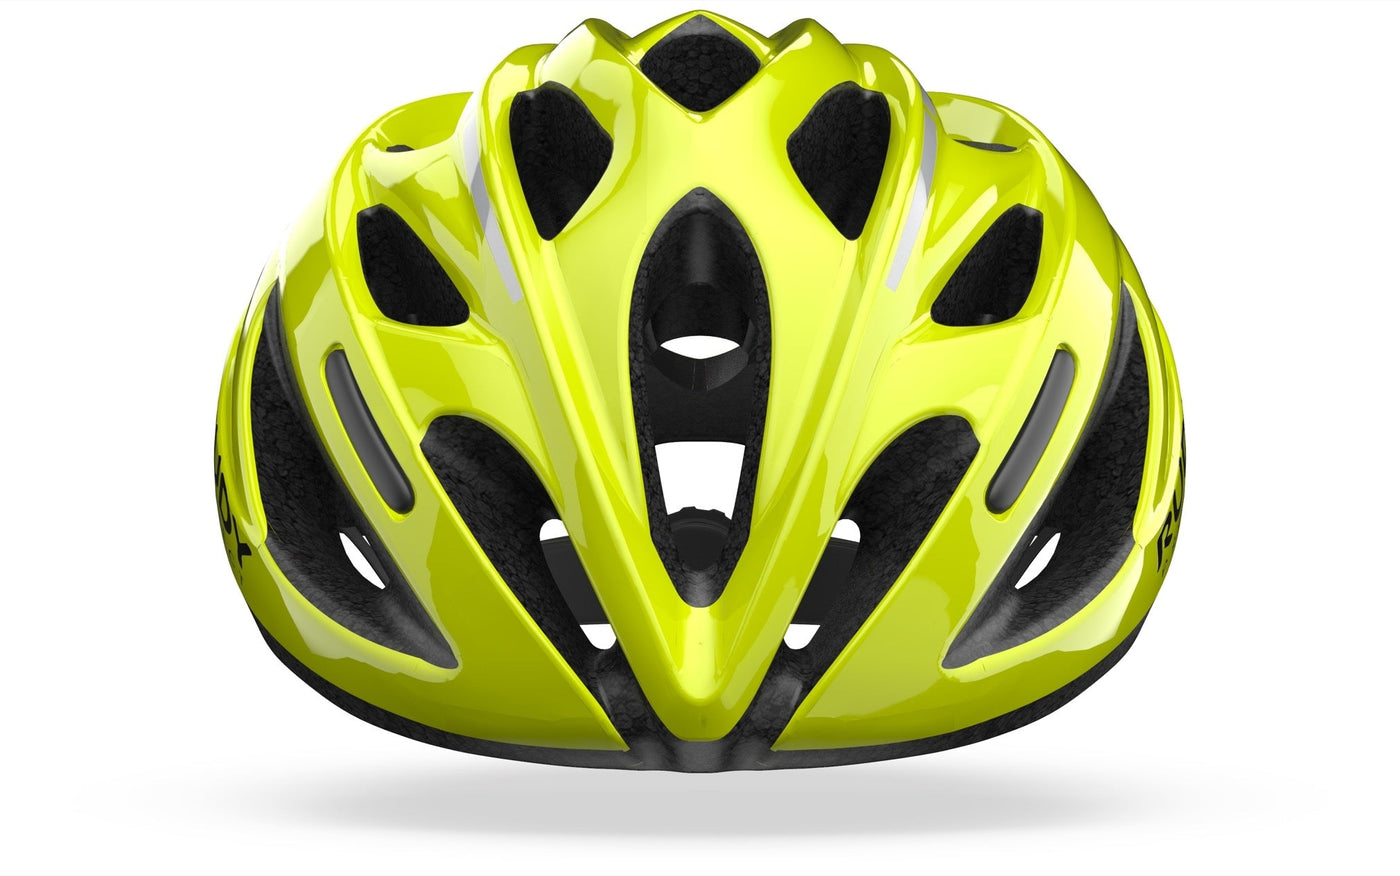 Rudy Project Zumy Helmet - Cyclop.in